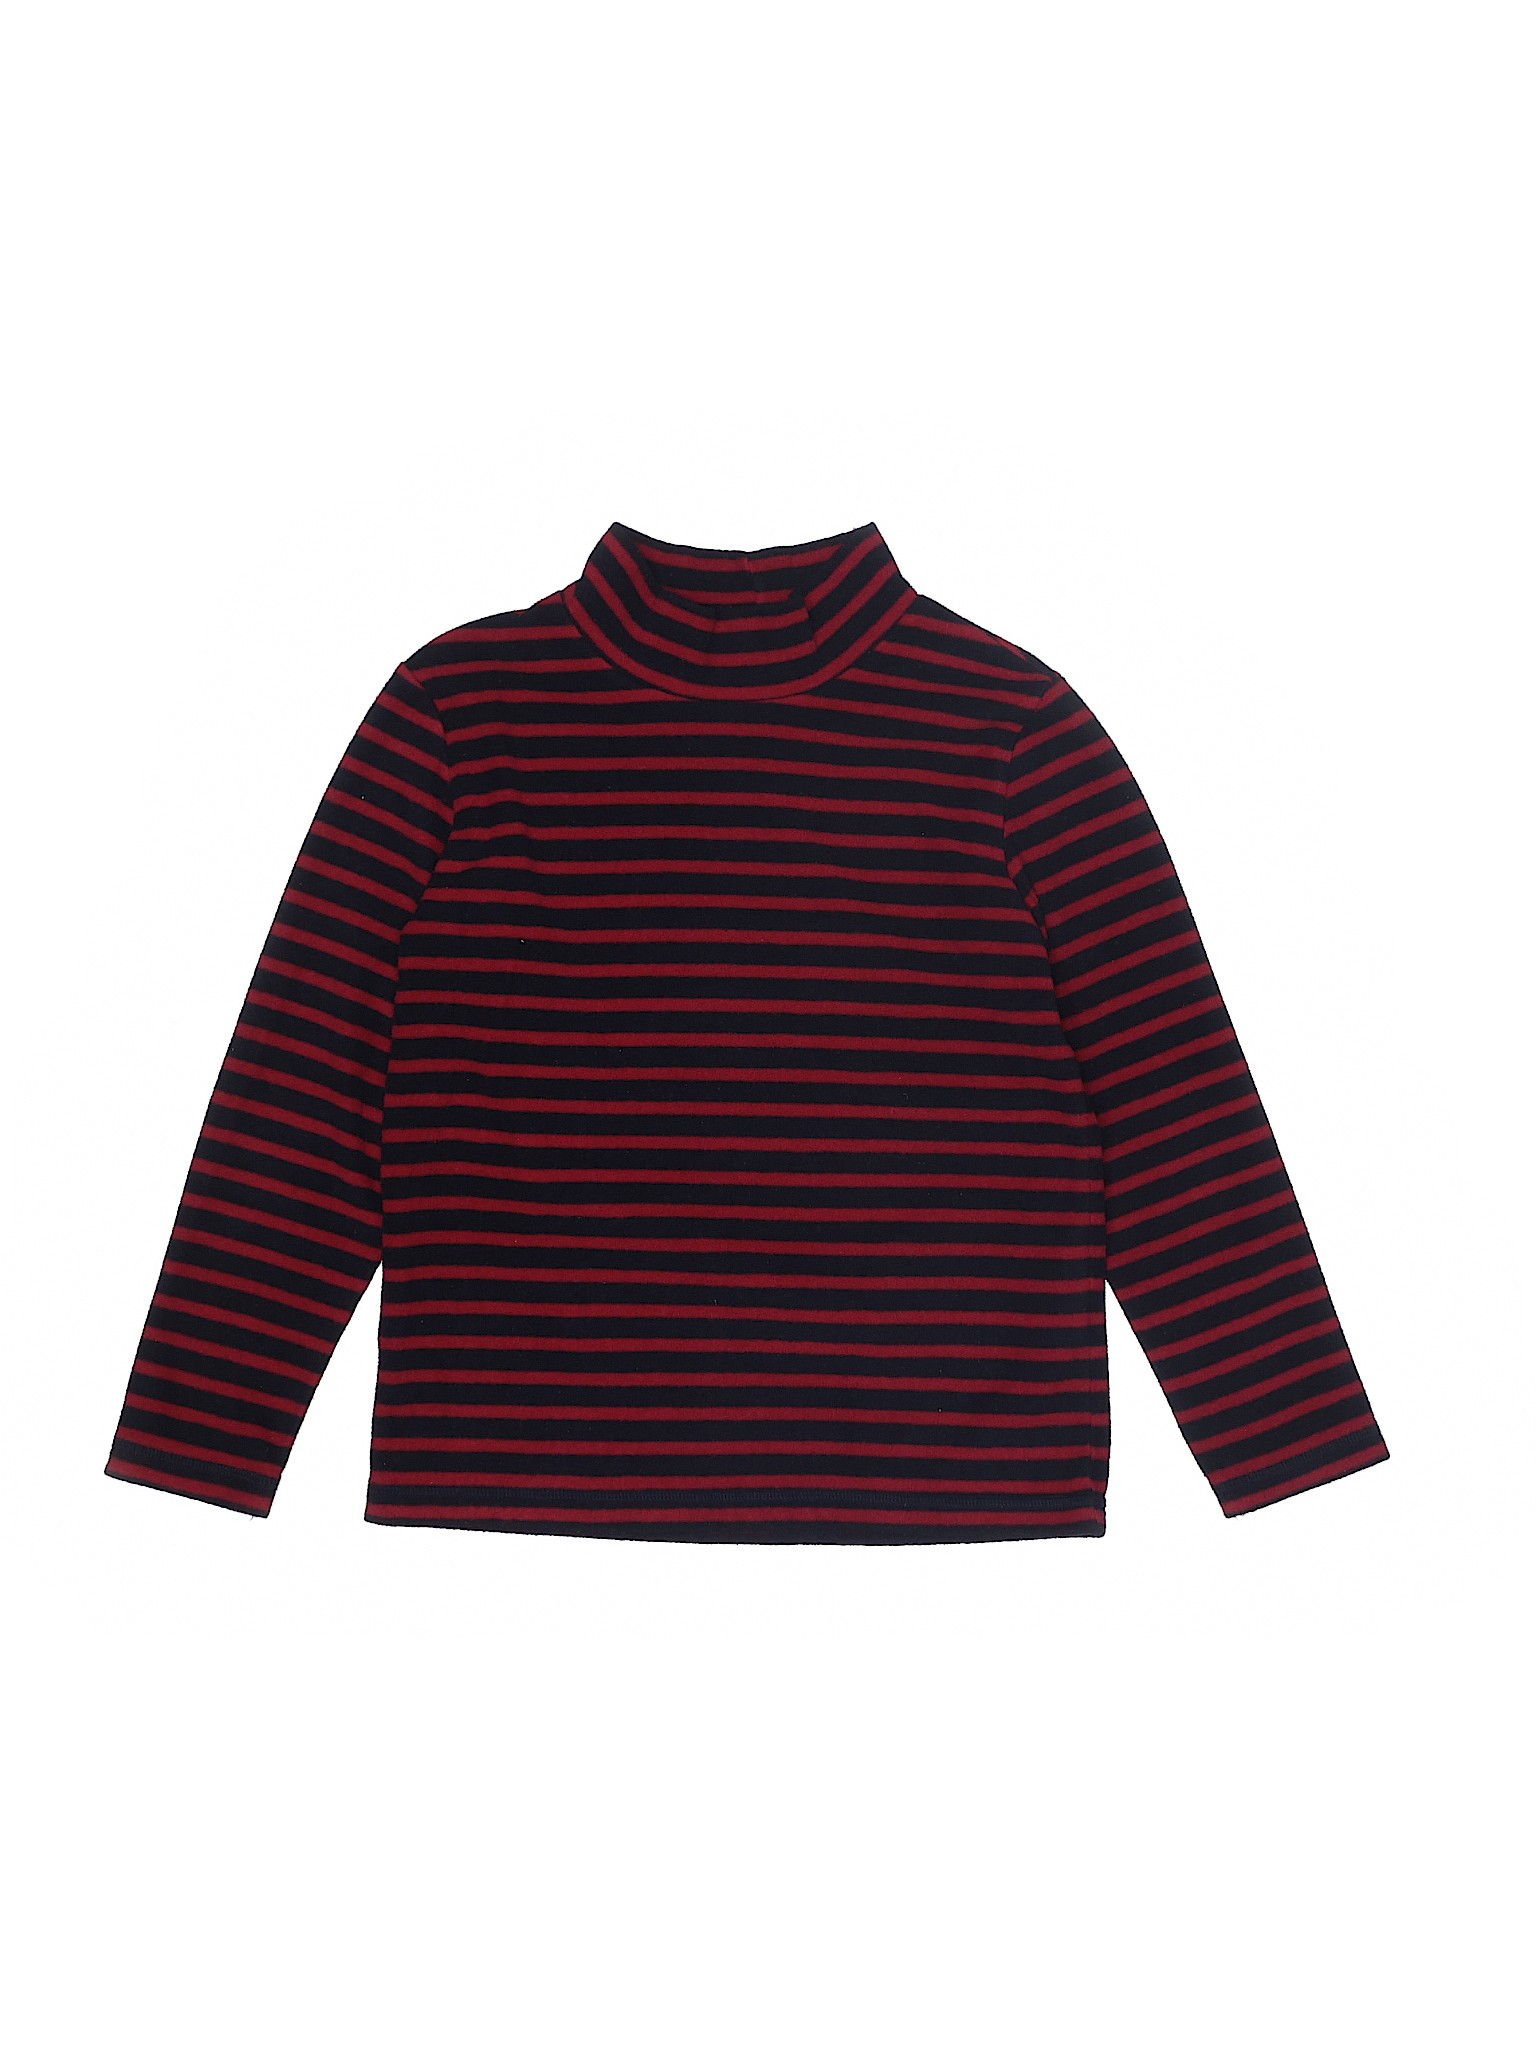 Uniqlo Boys Red Pullover Sweater 7 | eBay